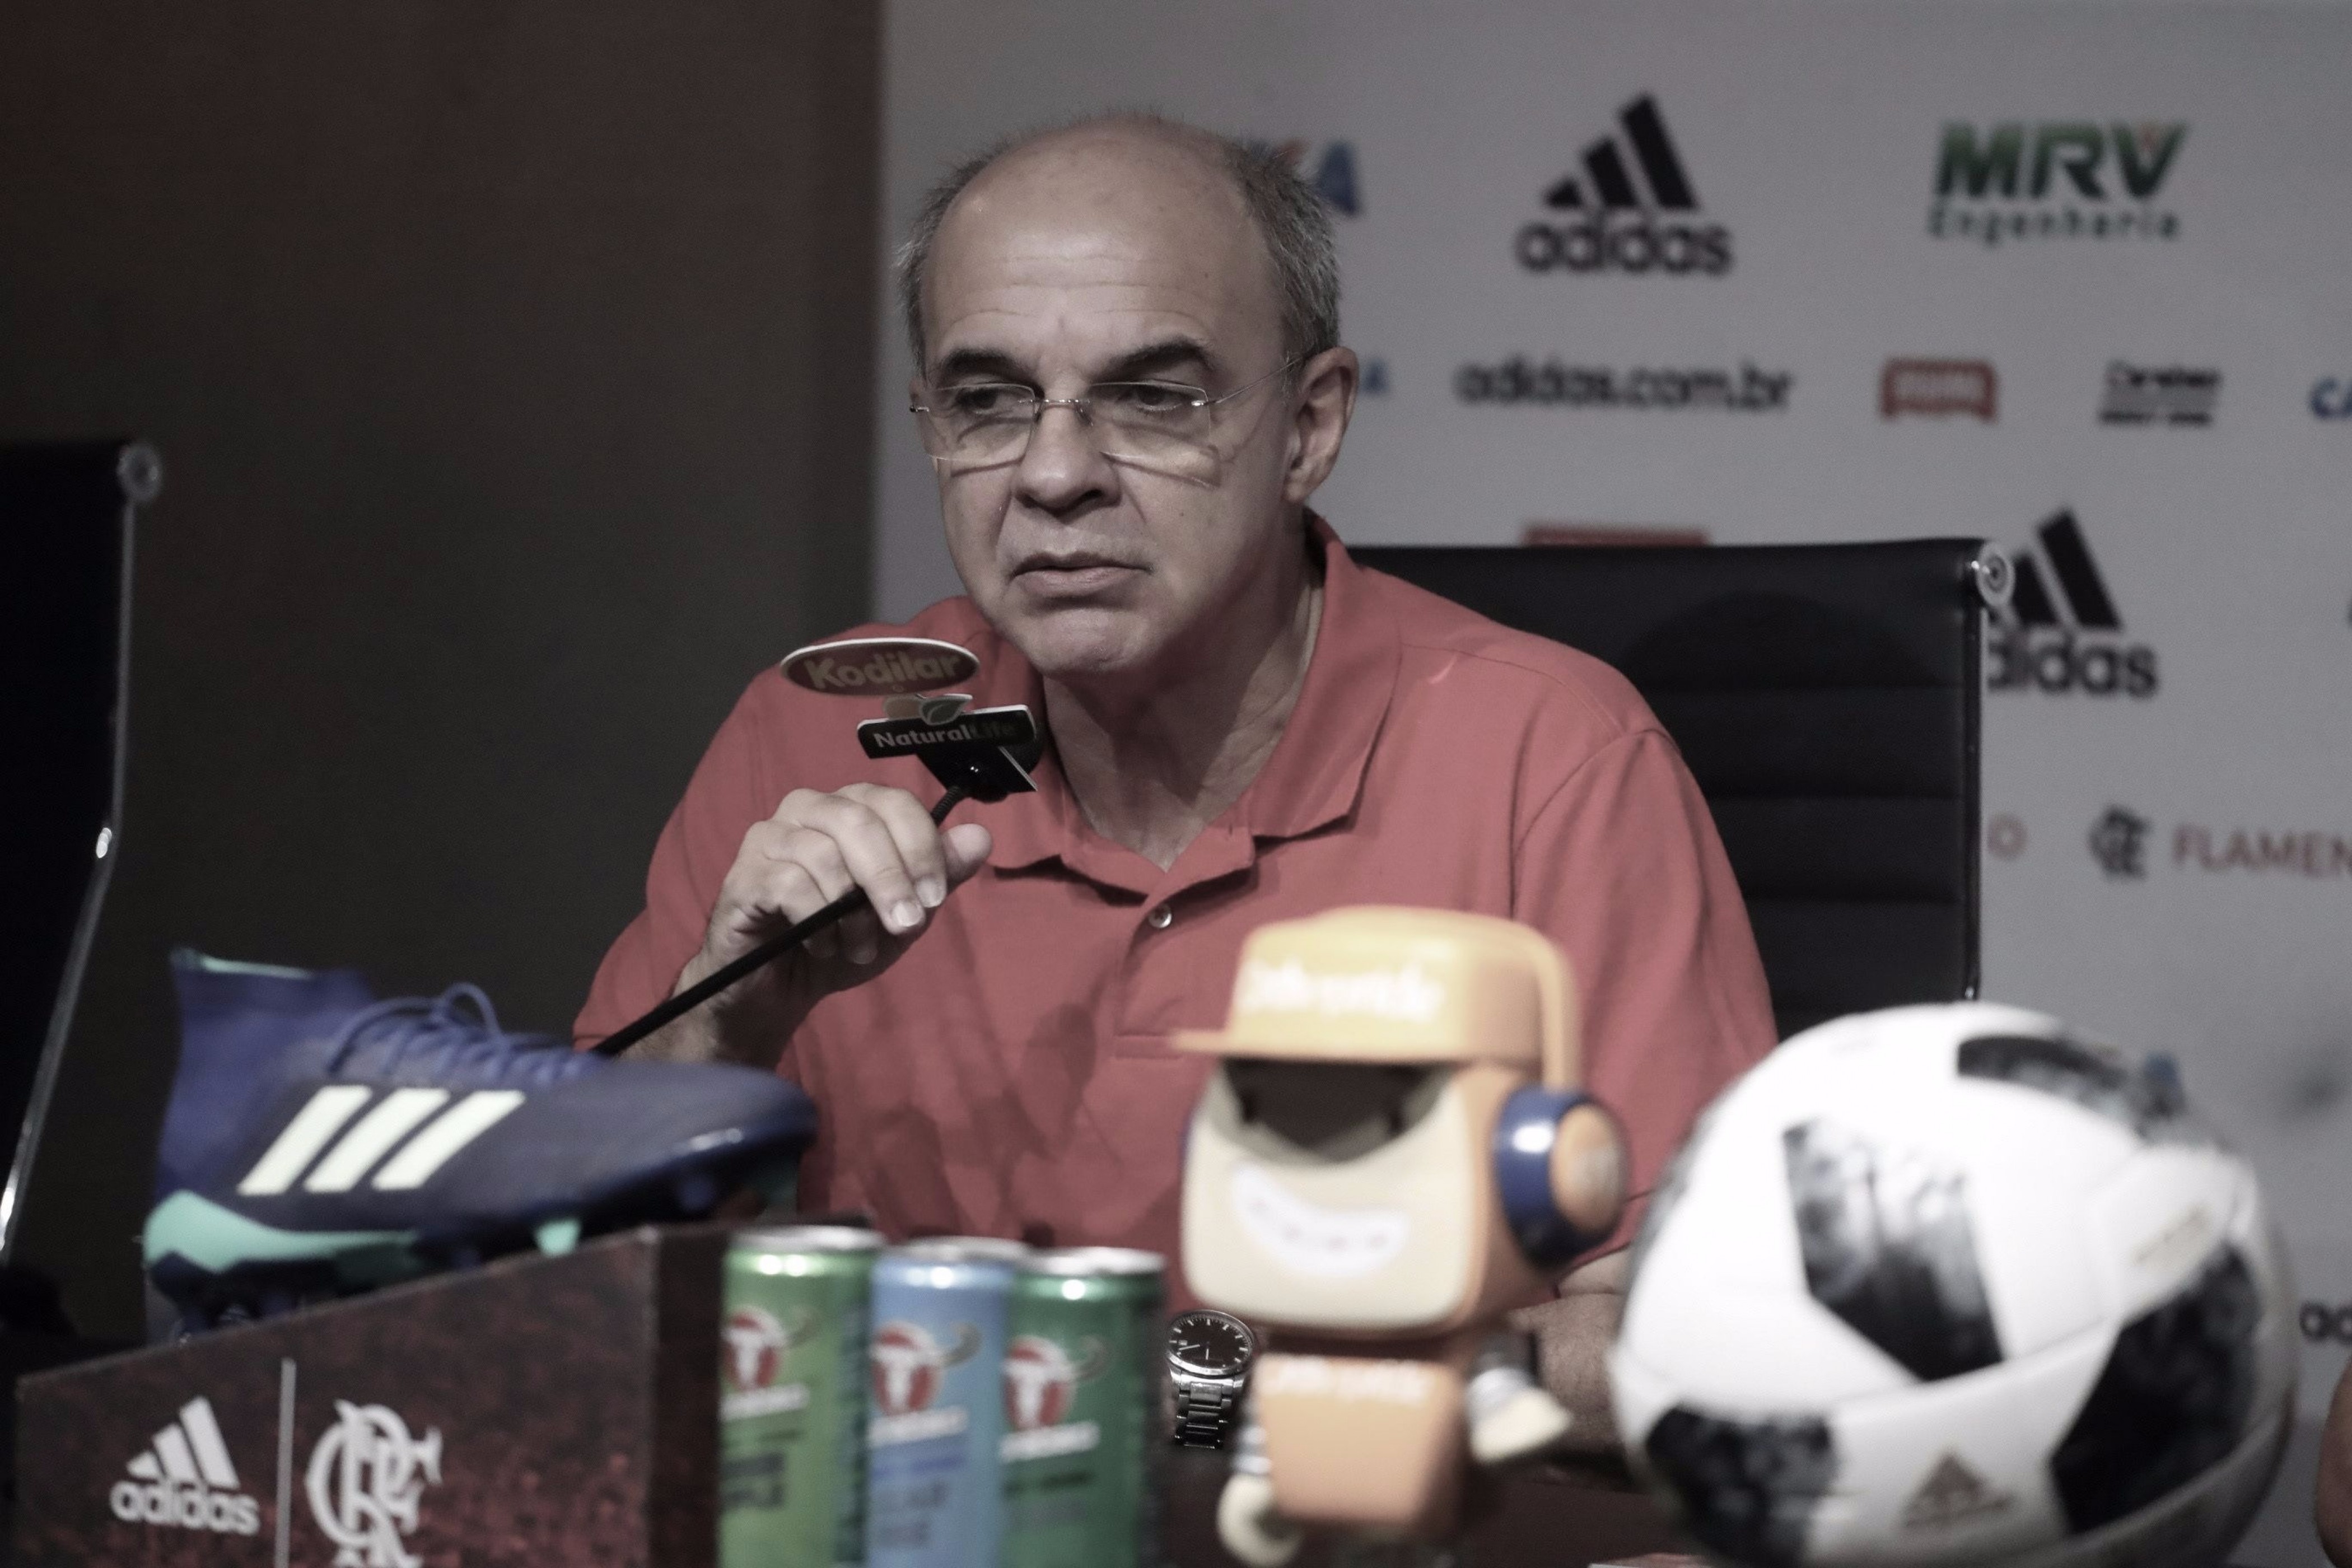 Presidente do Flamengo fica indignado com escolha de juiz para Copa do Brasil: "Revoltante"